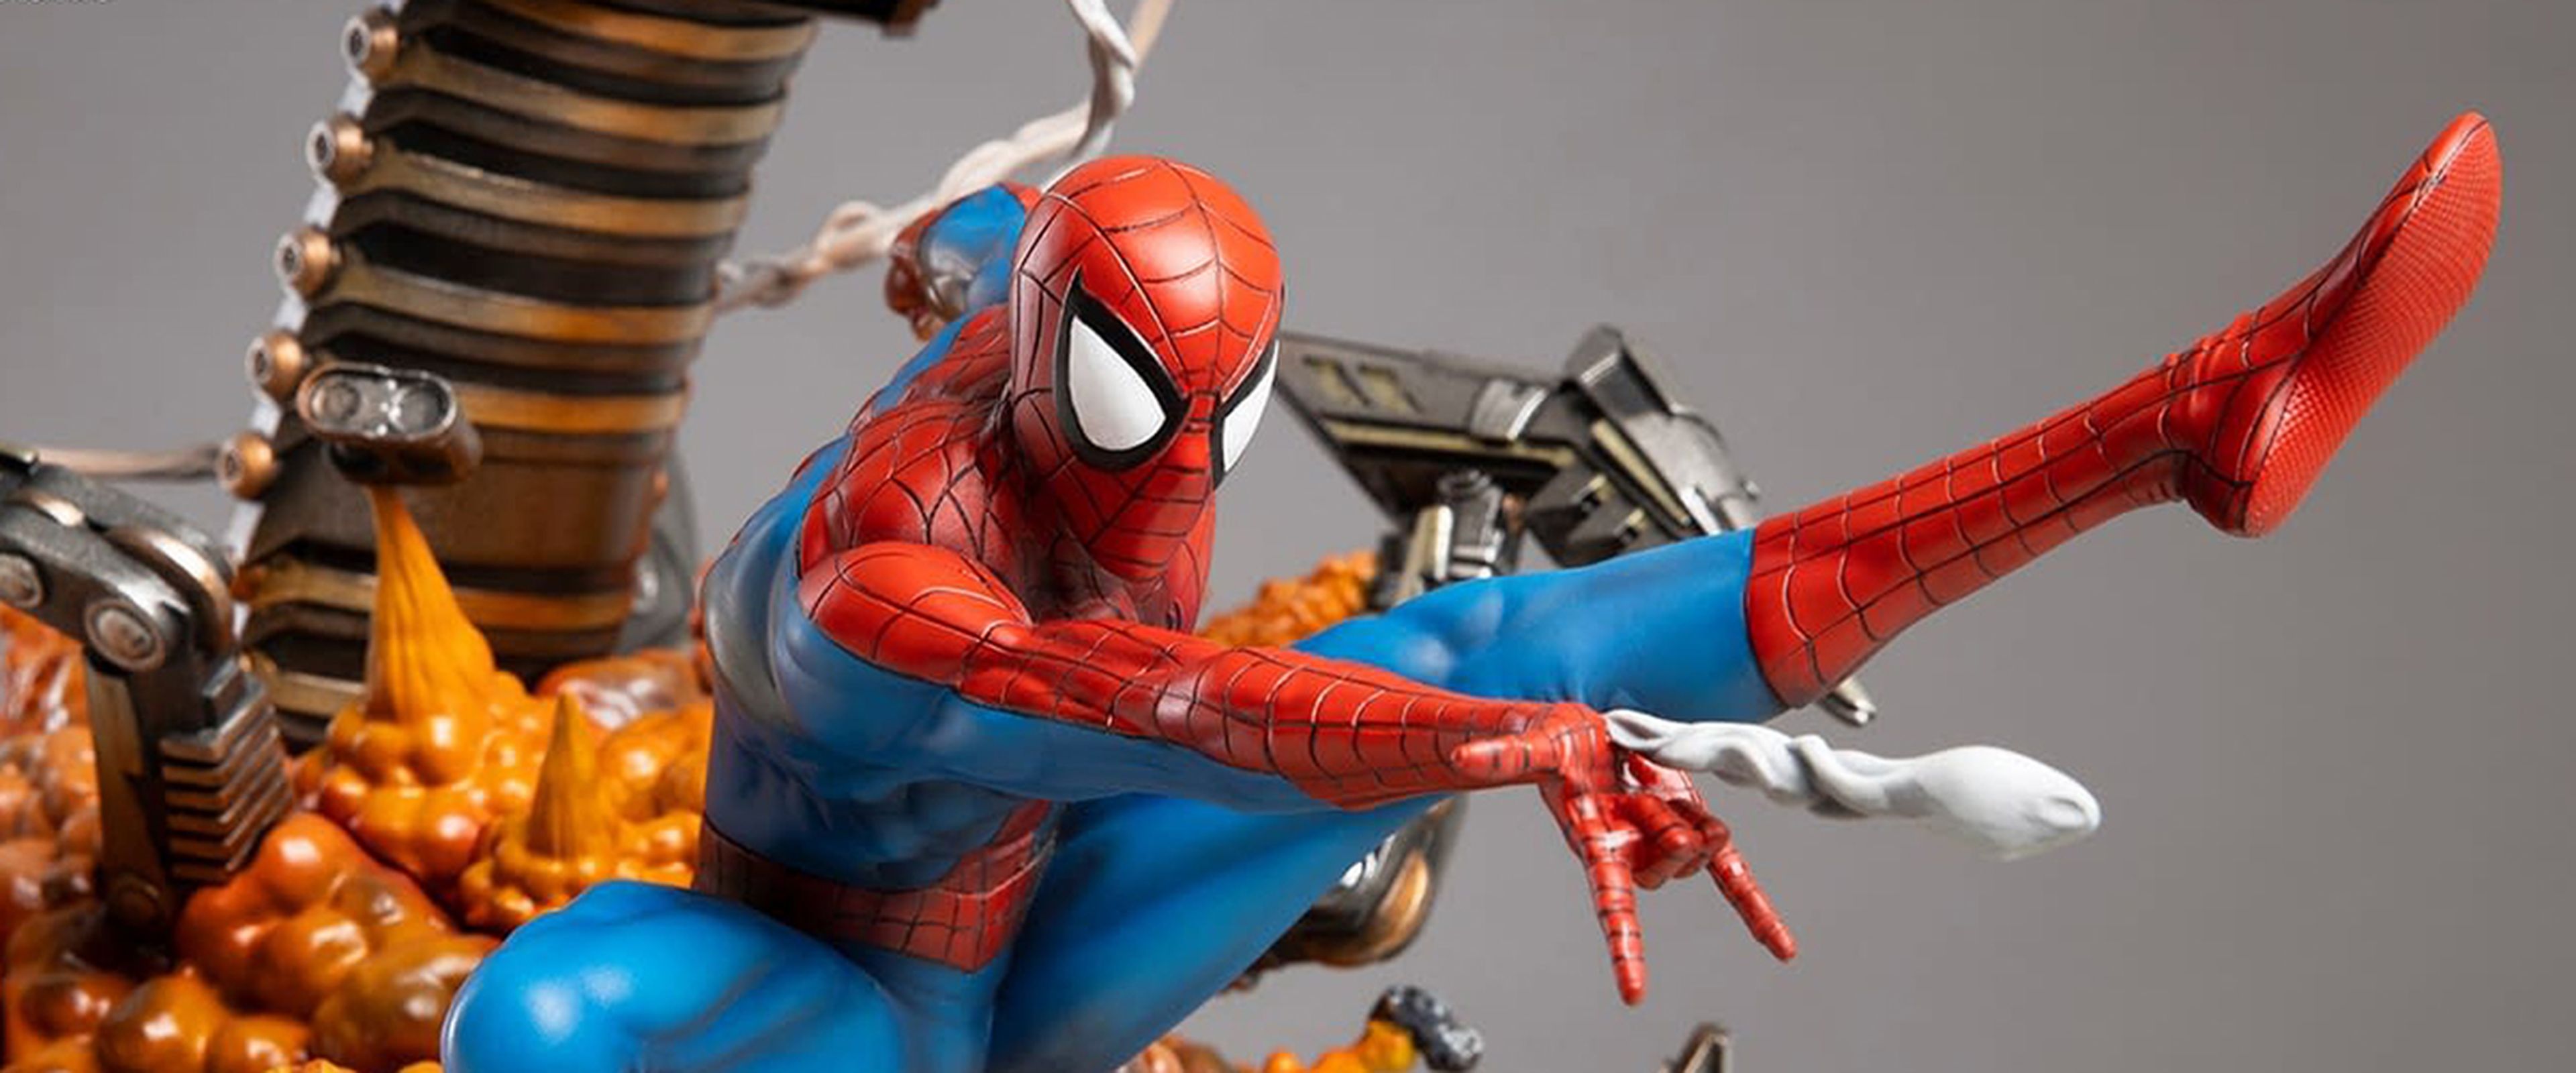 Spider-Man estrella de una figura de resina (casi literalmente) | Hobby Consolas